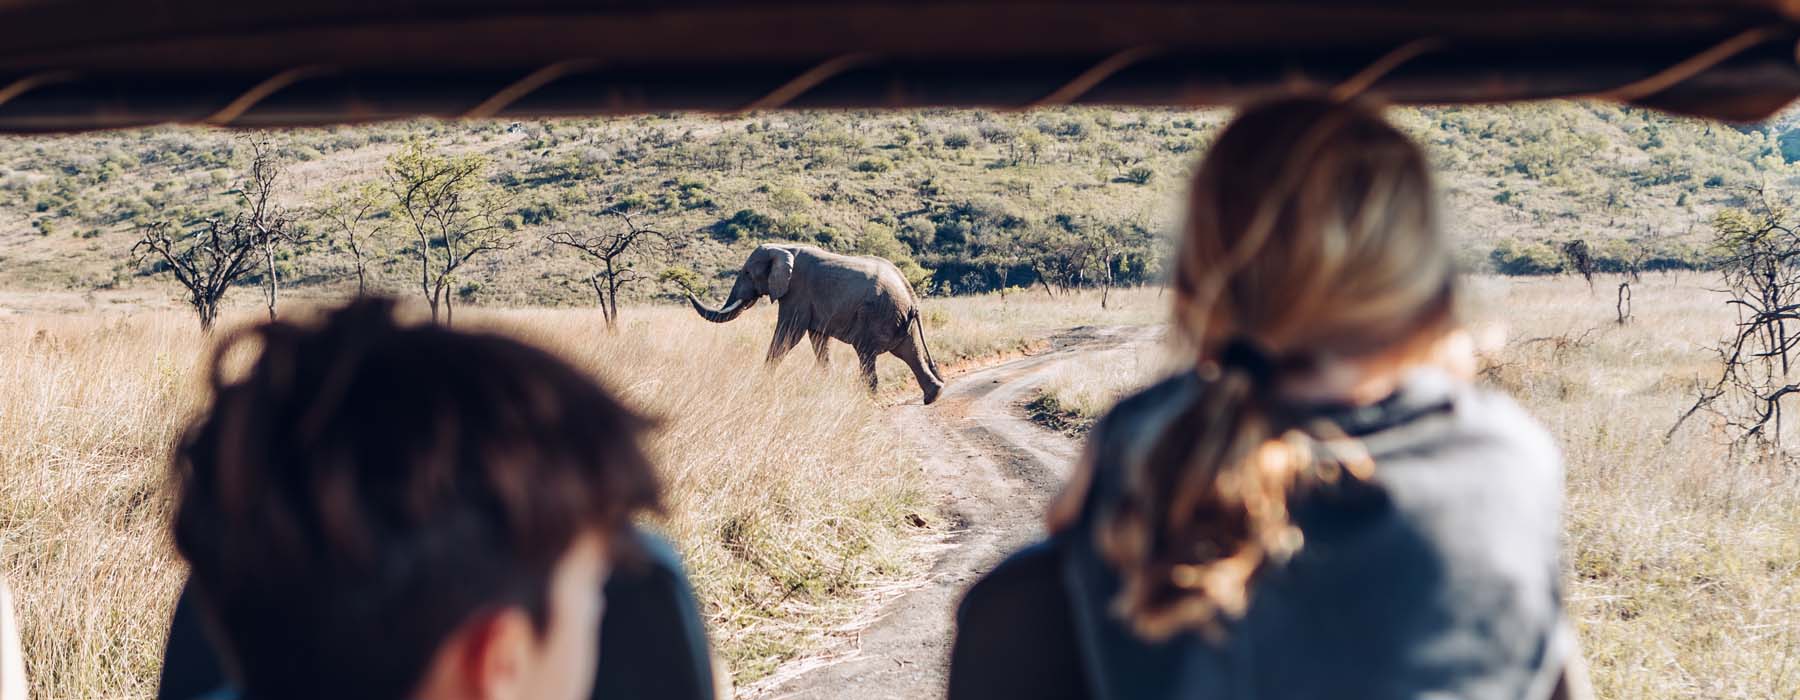 South Africa<br class="hidden-md hidden-lg" /> Big Five Safaris